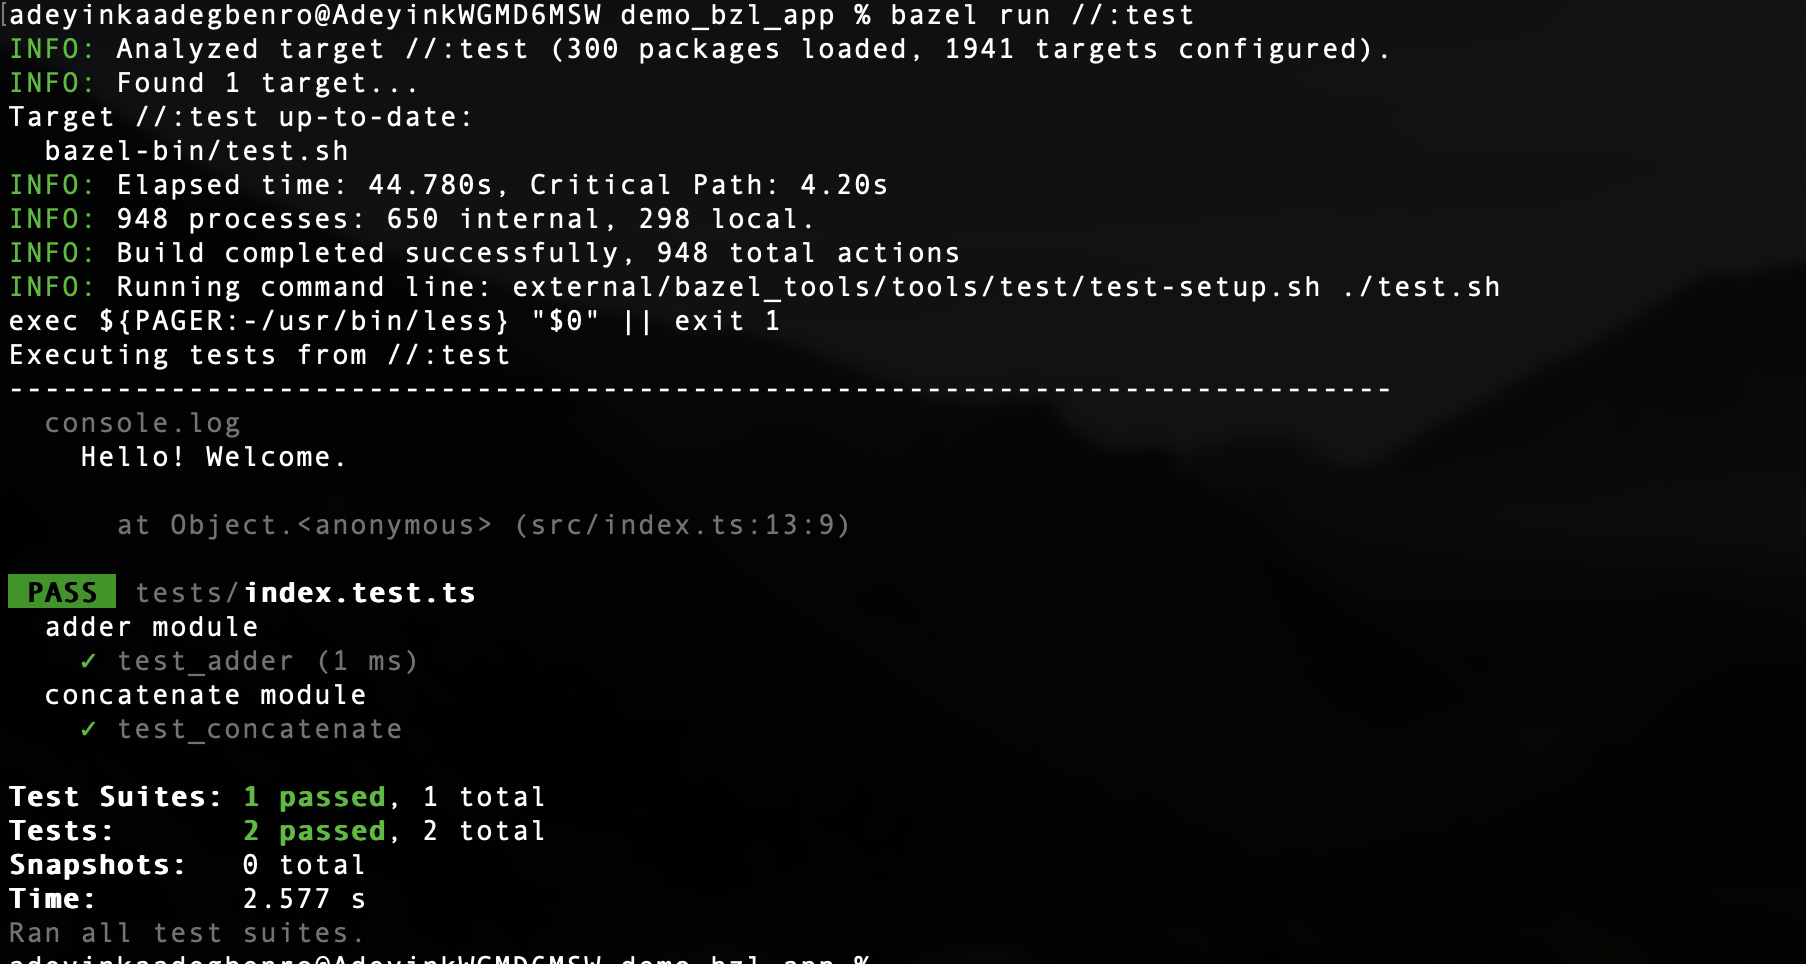 Скриншот&nbsp;$ bazel run //:test вывода терминала